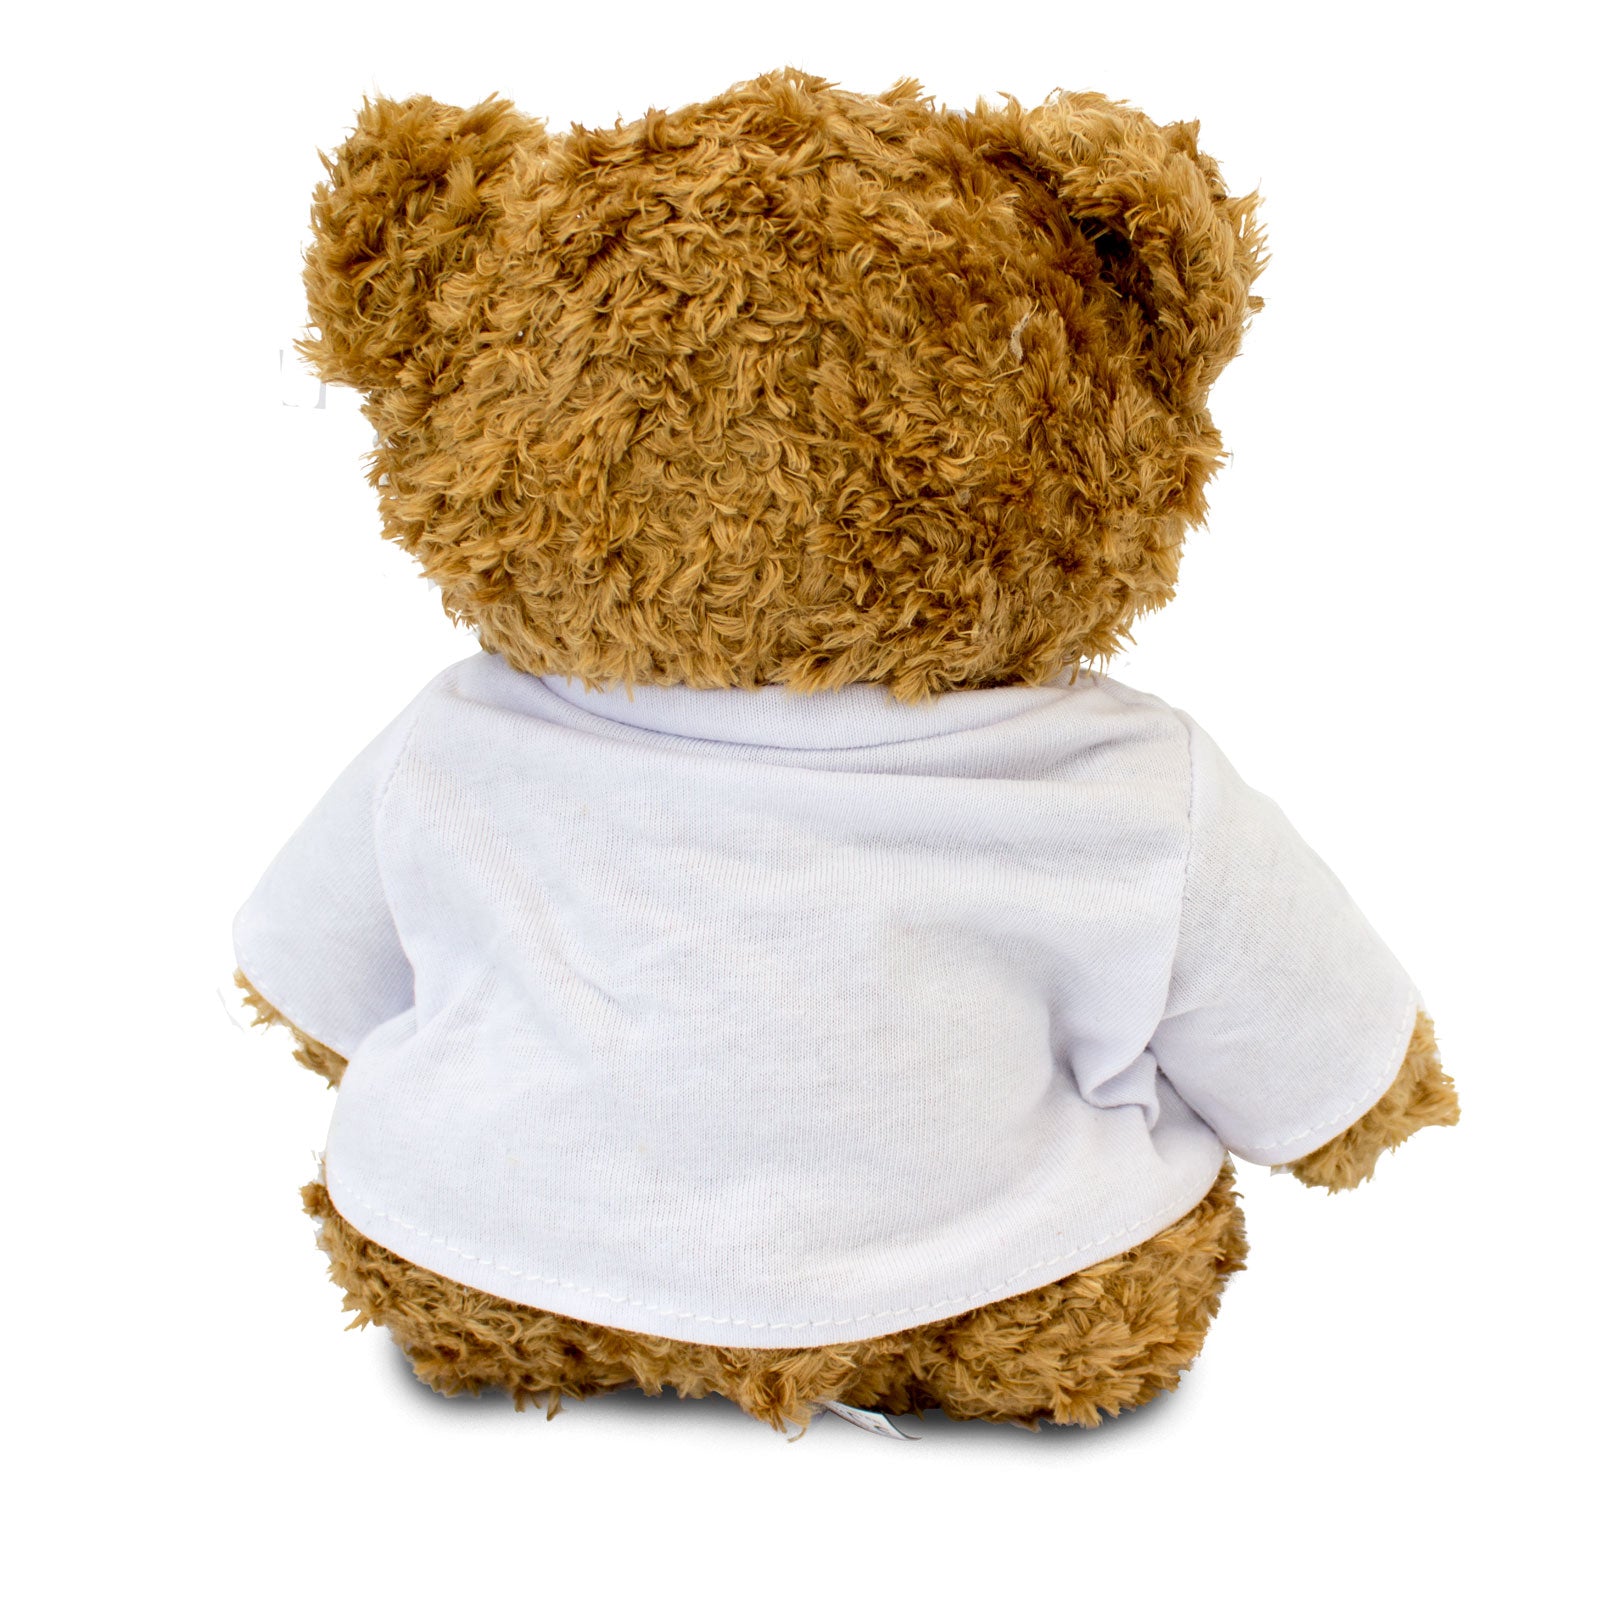 Get Well Soon Evie - Teddy Bear